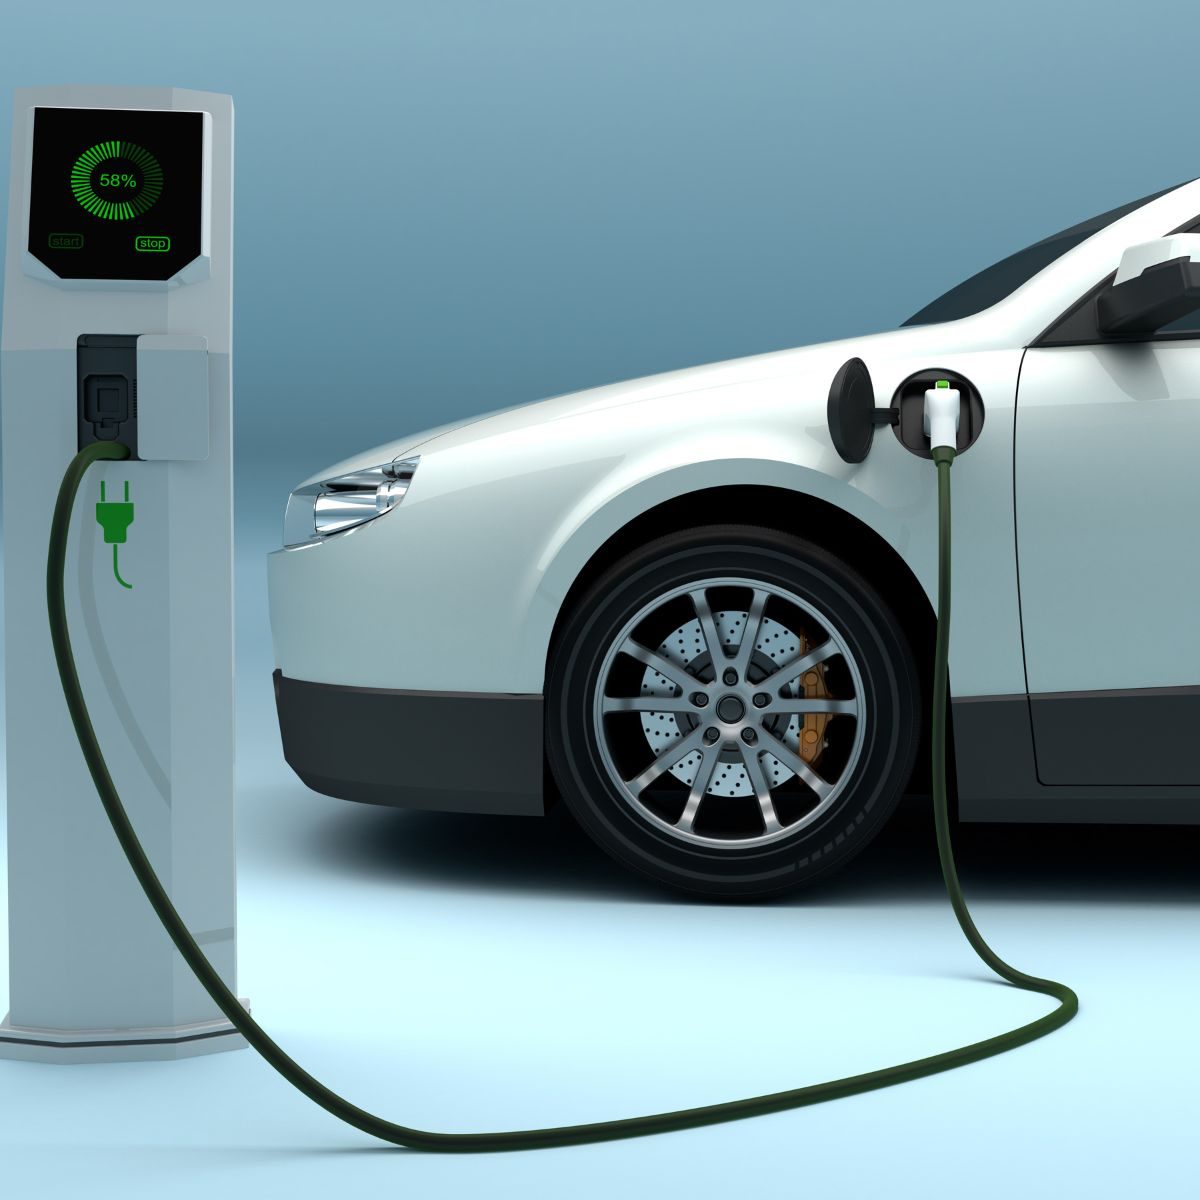 ITRSL - Salud del planeta cero emisiones coche electrico